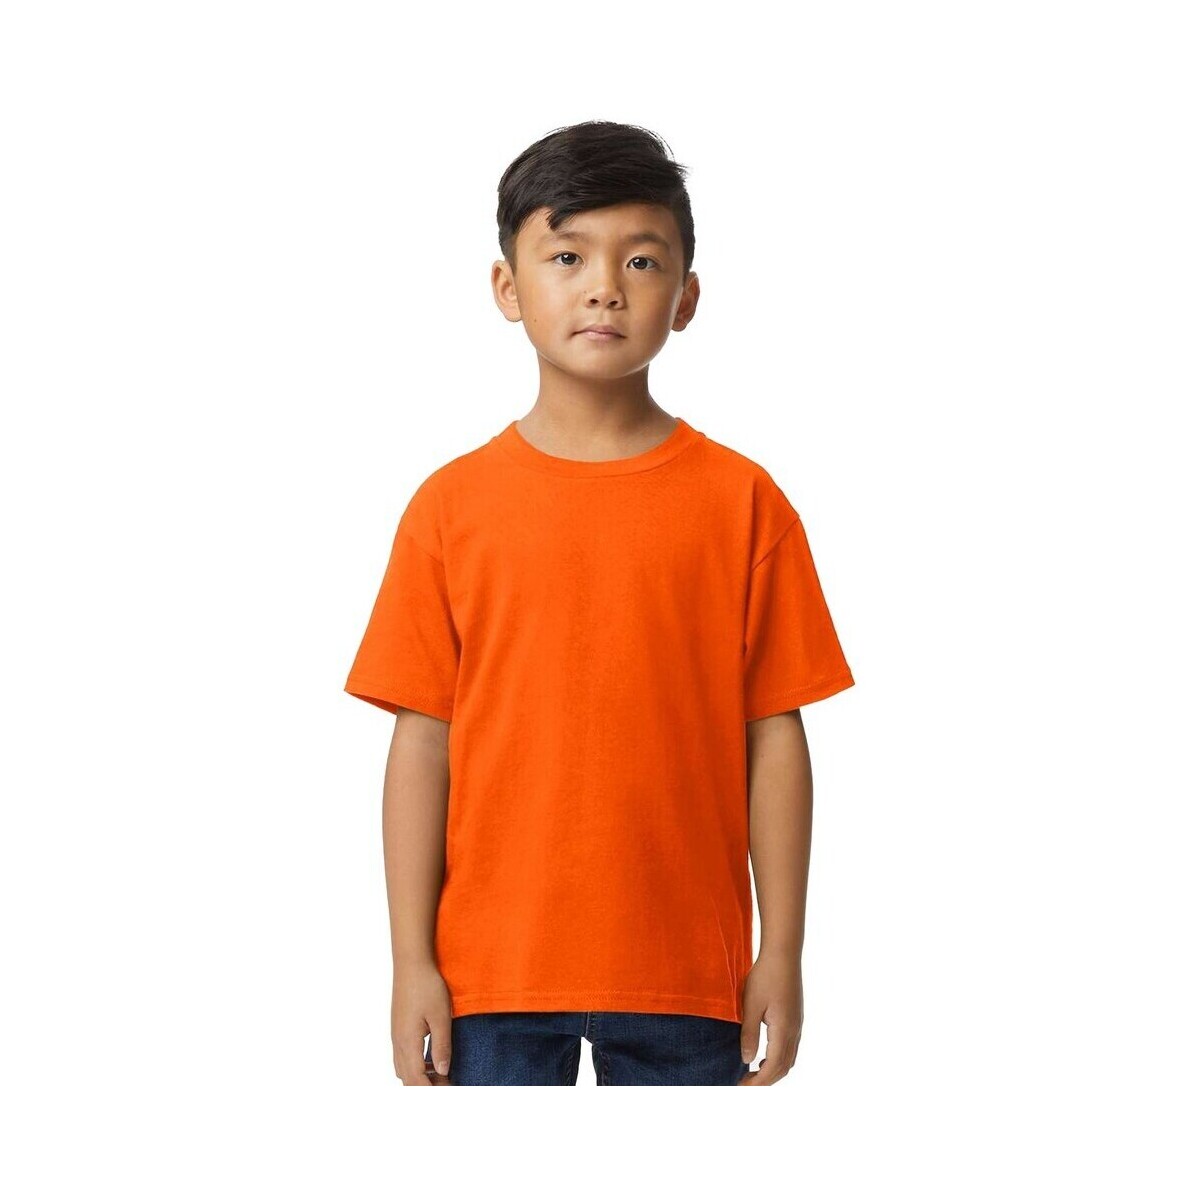 Vêtements Enfant T-shirts manches courtes Gildan 65000B Orange